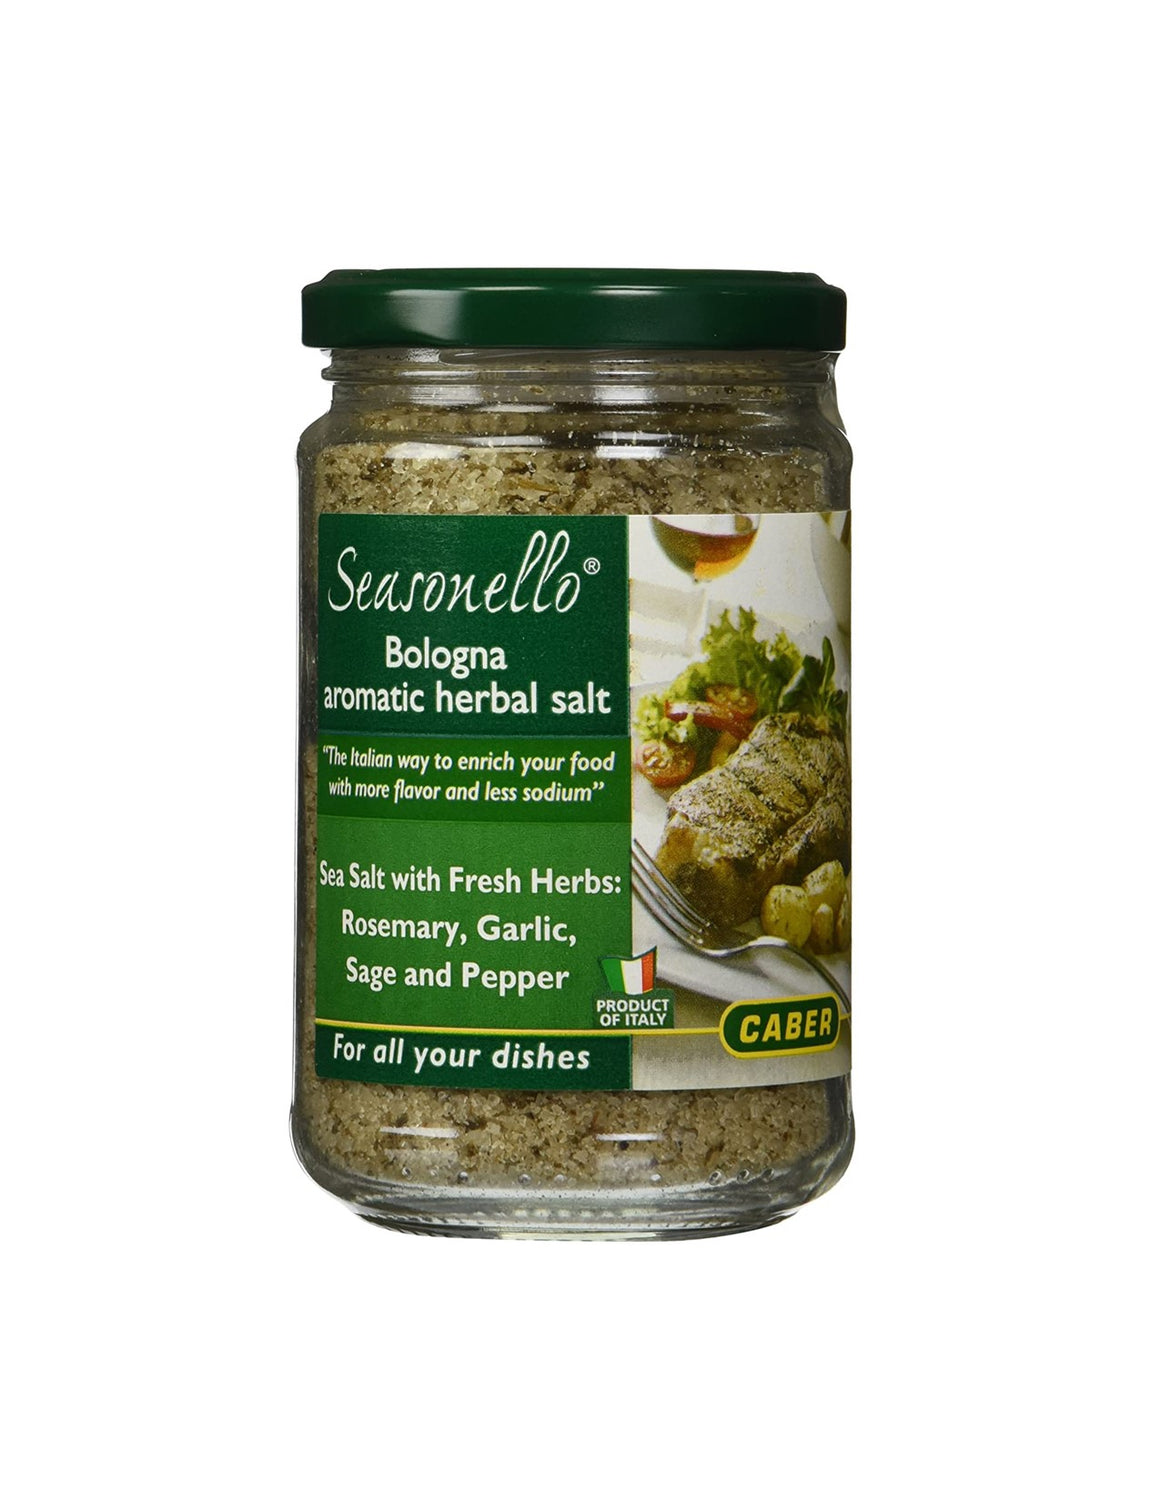 Seasonello Bologna Aromatic Herbal Salt